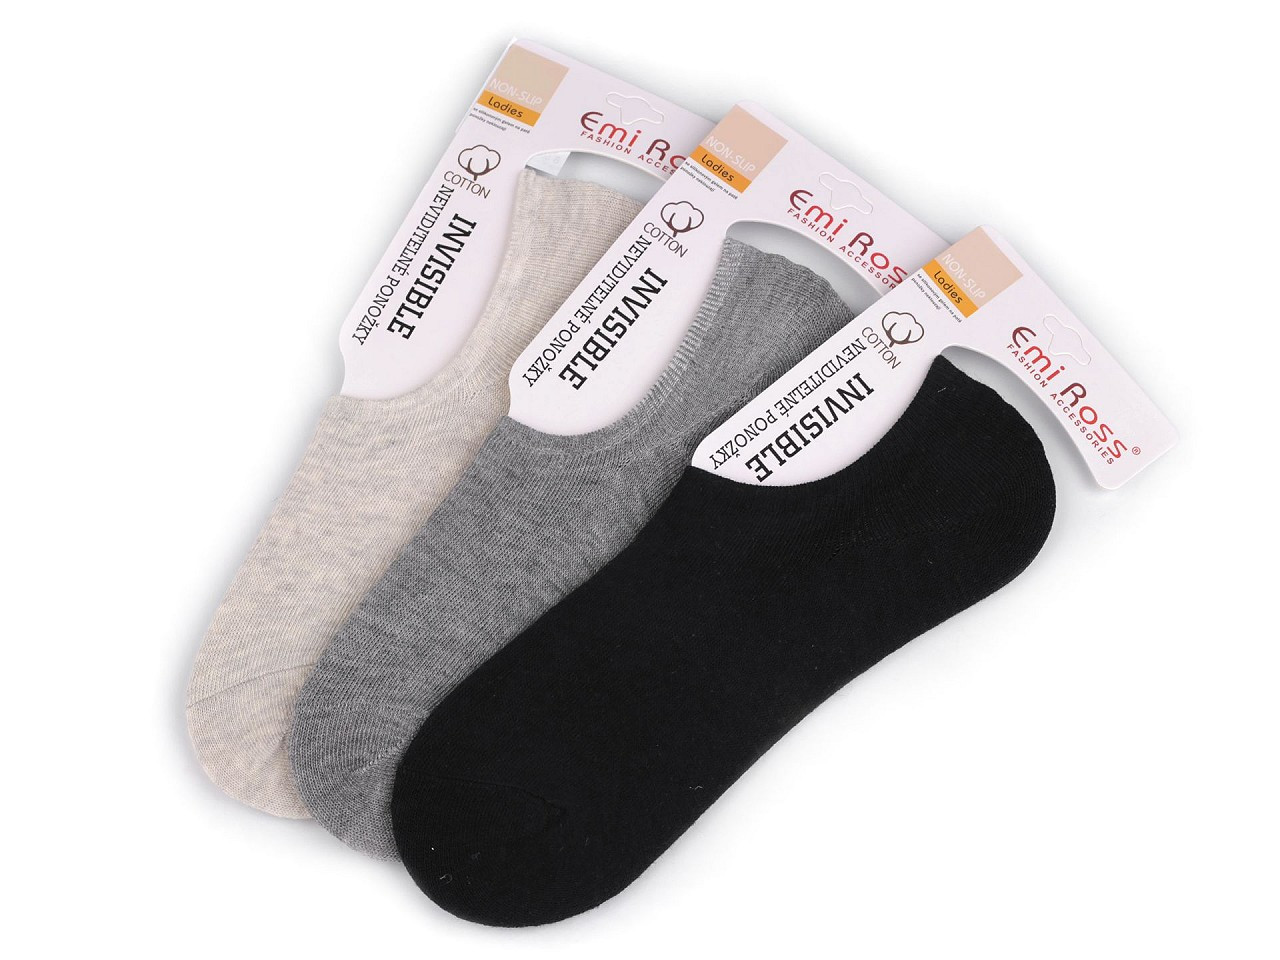 Dámské bavlněné ponožky do tenisek Emi Ross, barva 10 (vel. 39-42) mix